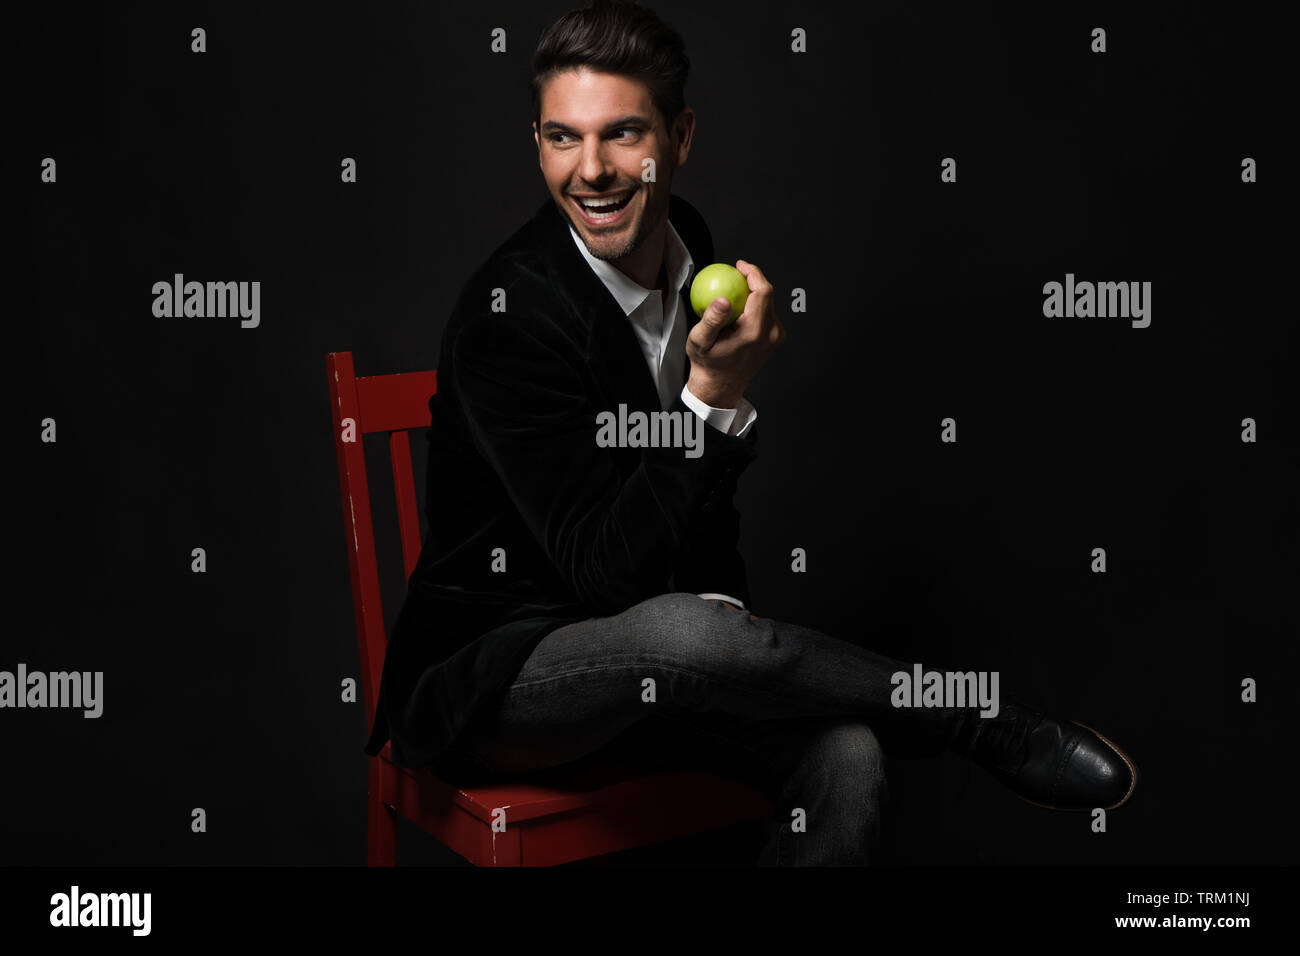 Una buona ricerca bianco modello maschio si siede con le gambe incrociate su una sedia rossa, tenendo una mela verde. Egli guarda lontano sorridente in un giocoso umore. Foto Stock